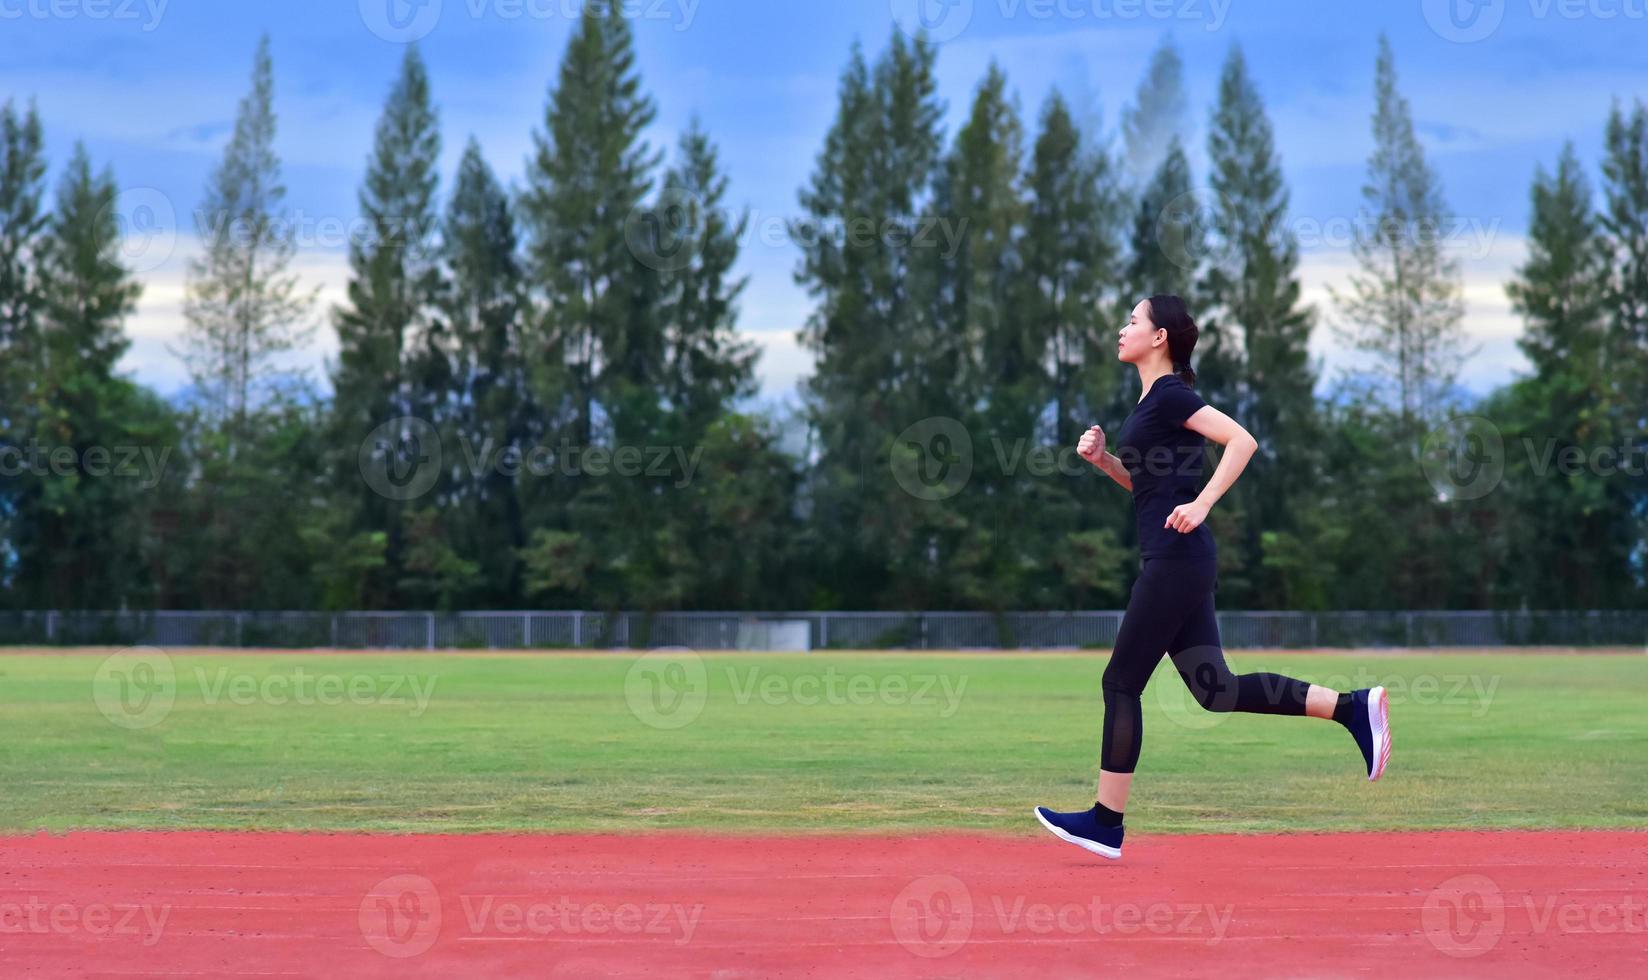 Sportfrauen, die Sport treiben oder joggen foto